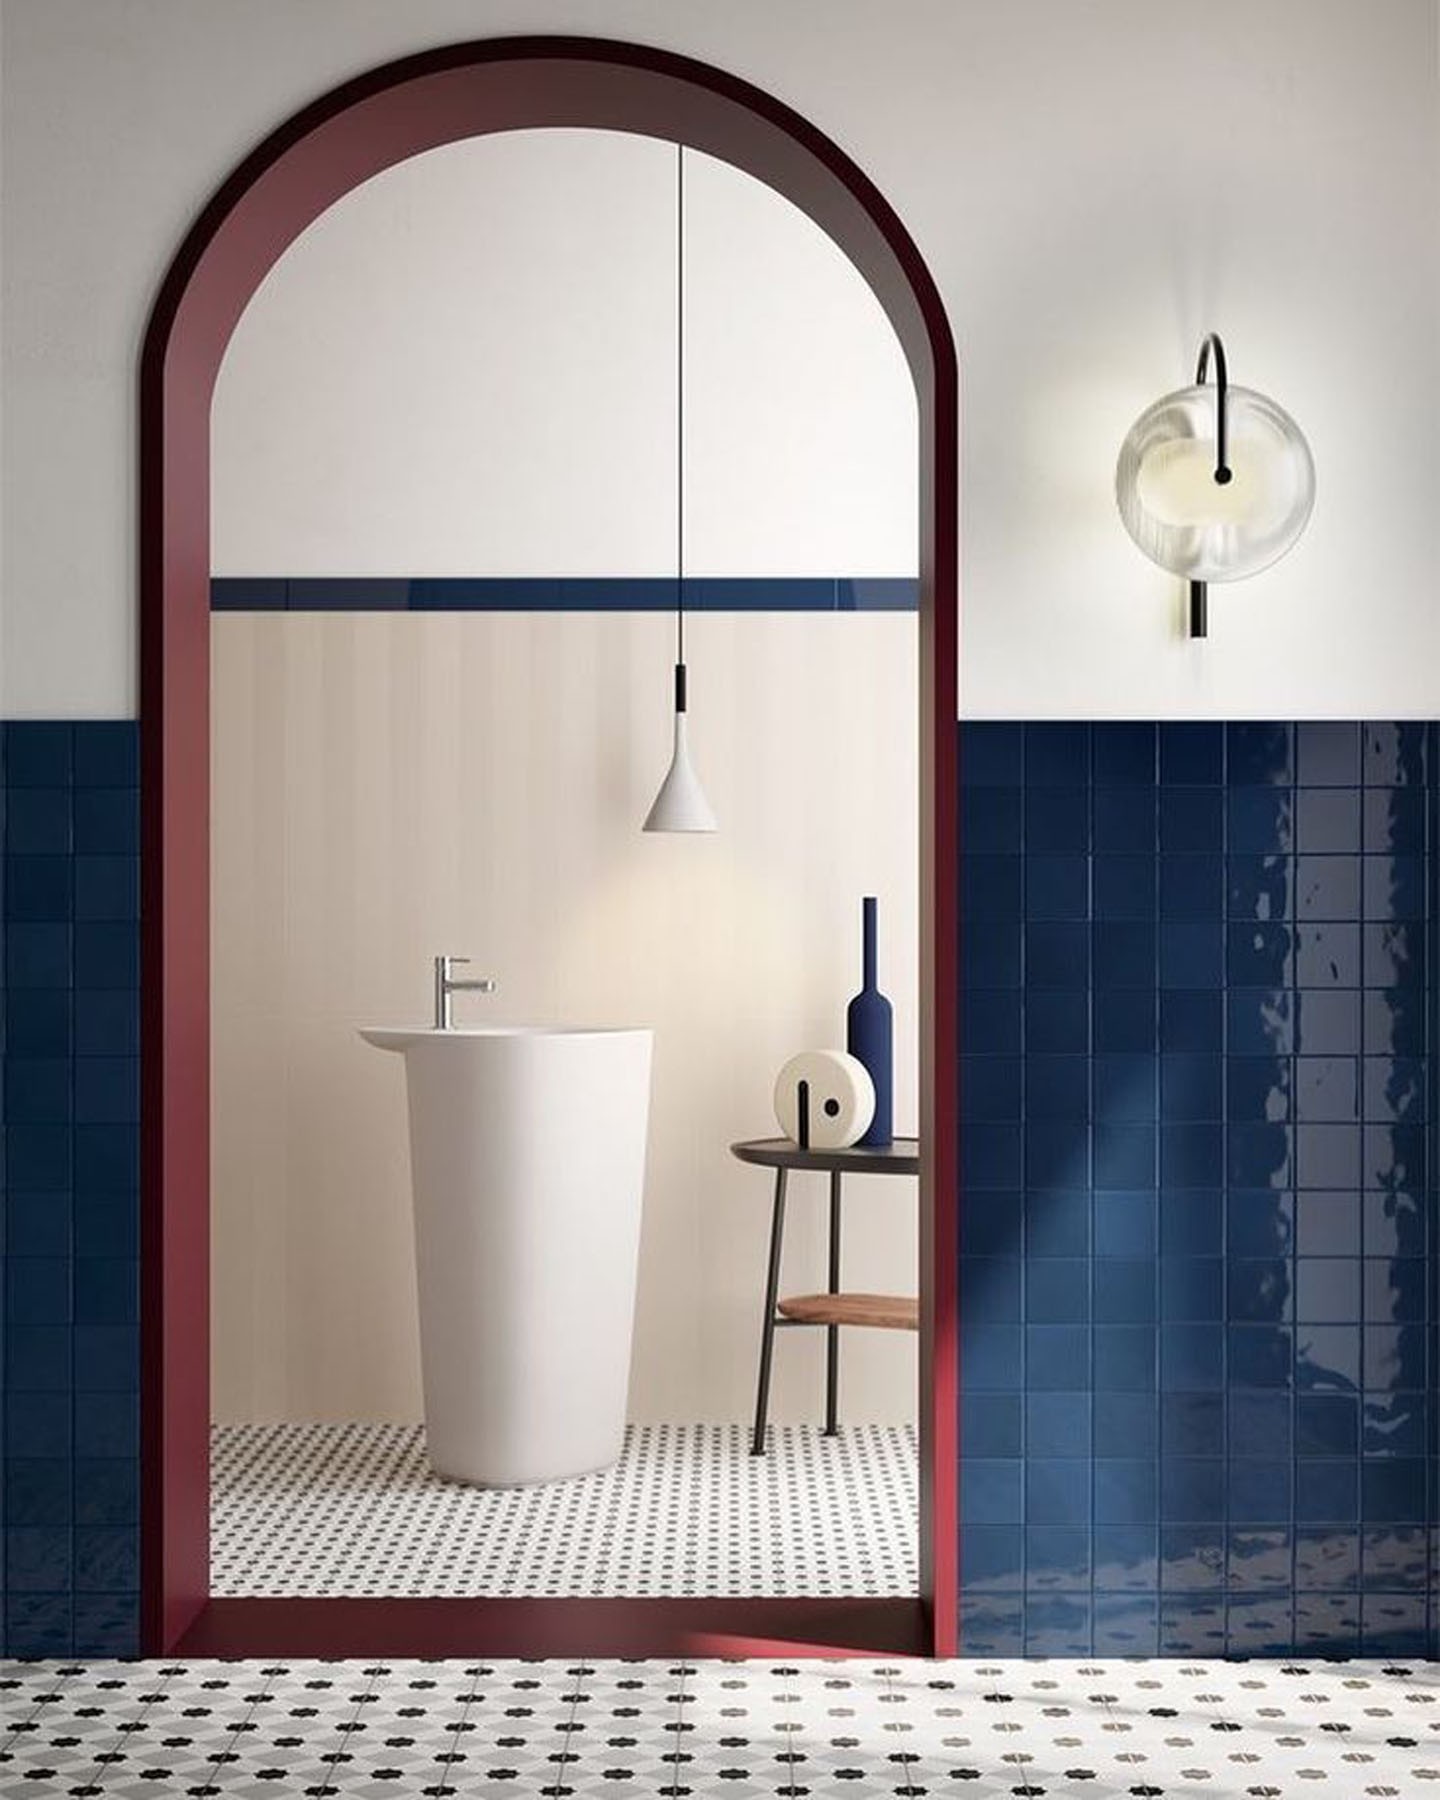 Décor do dia: lavabo moderno com azulejos na cor de 2020 (Foto: Divulgação)